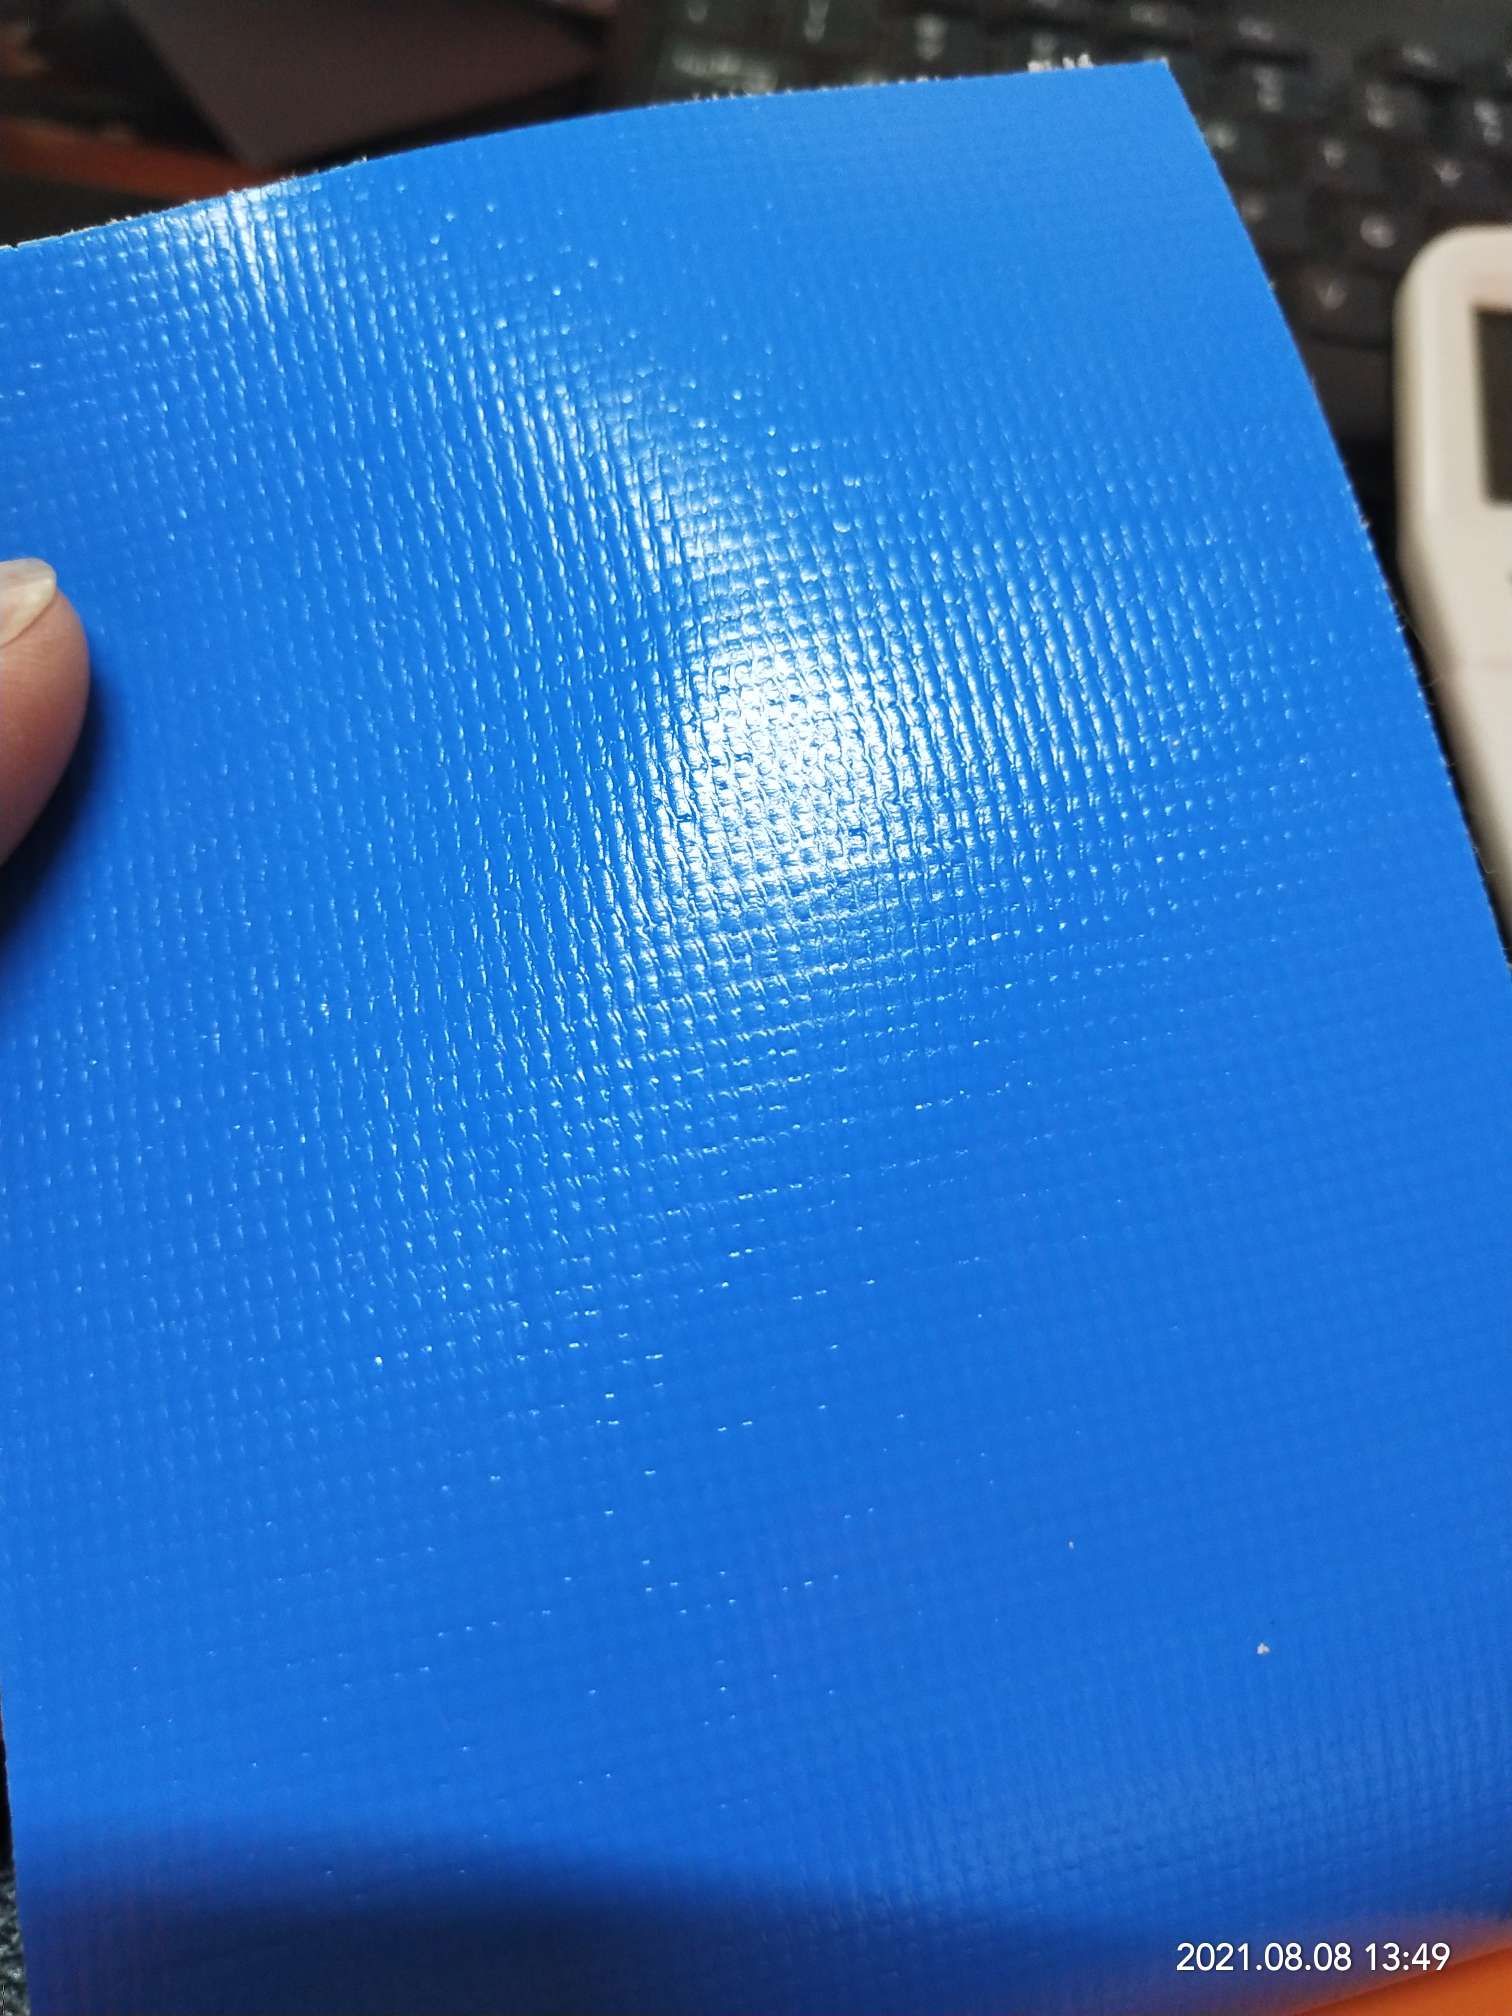 优质光面0.47mm厚浅蓝色PVC夹网布  箱包布  机器罩家具罩  体育游乐产品  格种箱包袋专用面料详情图5